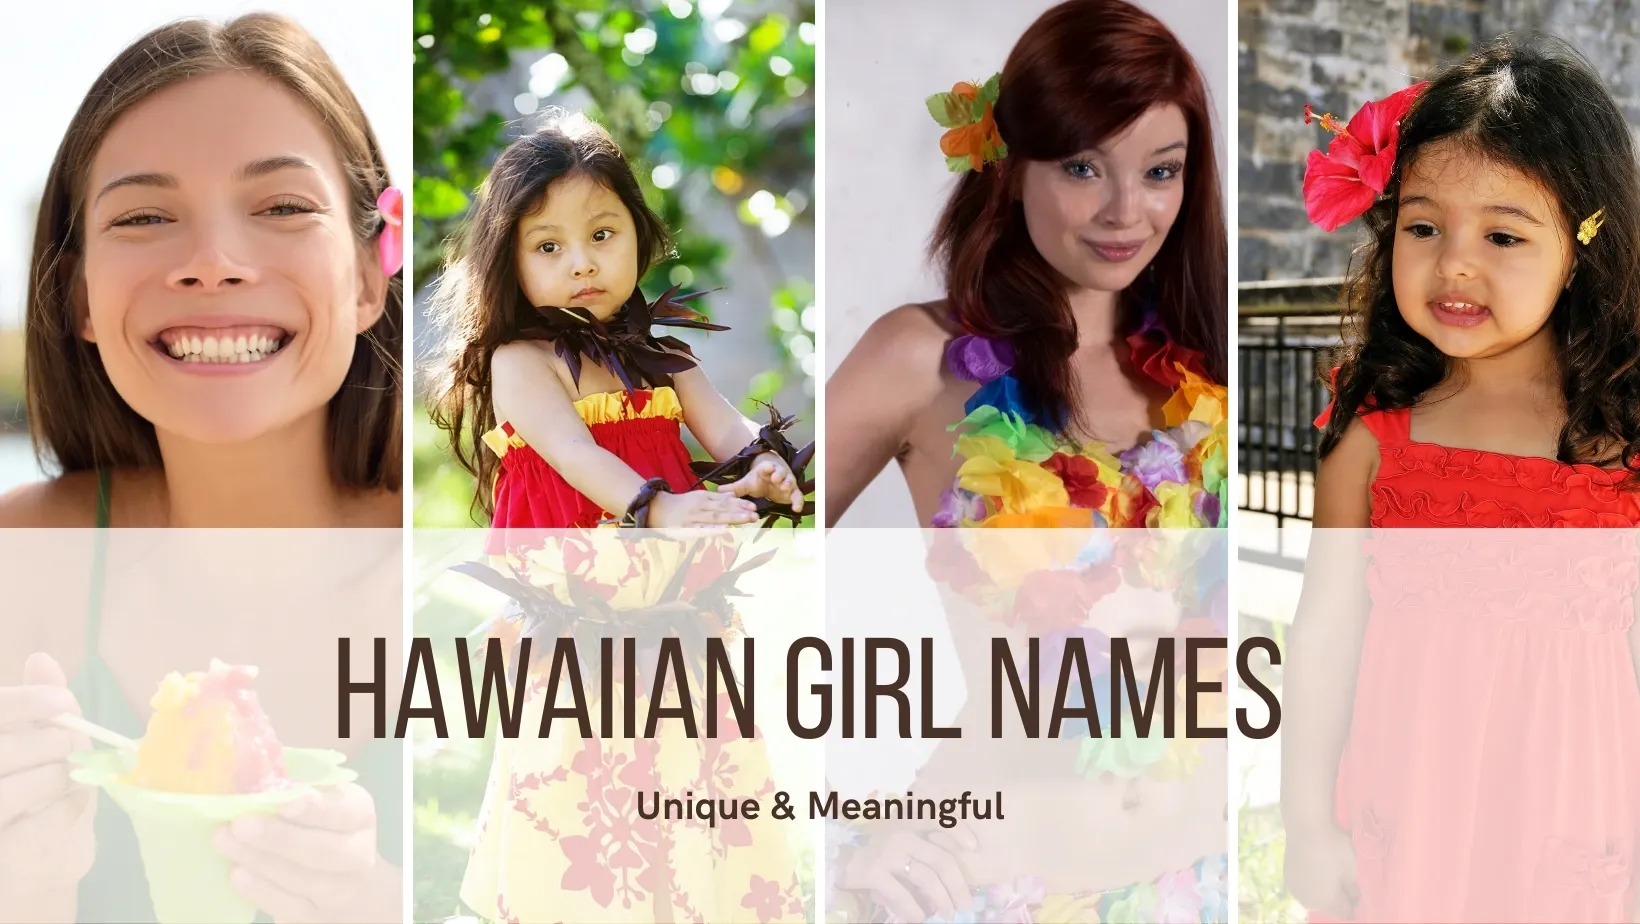 Hawaiian girl names